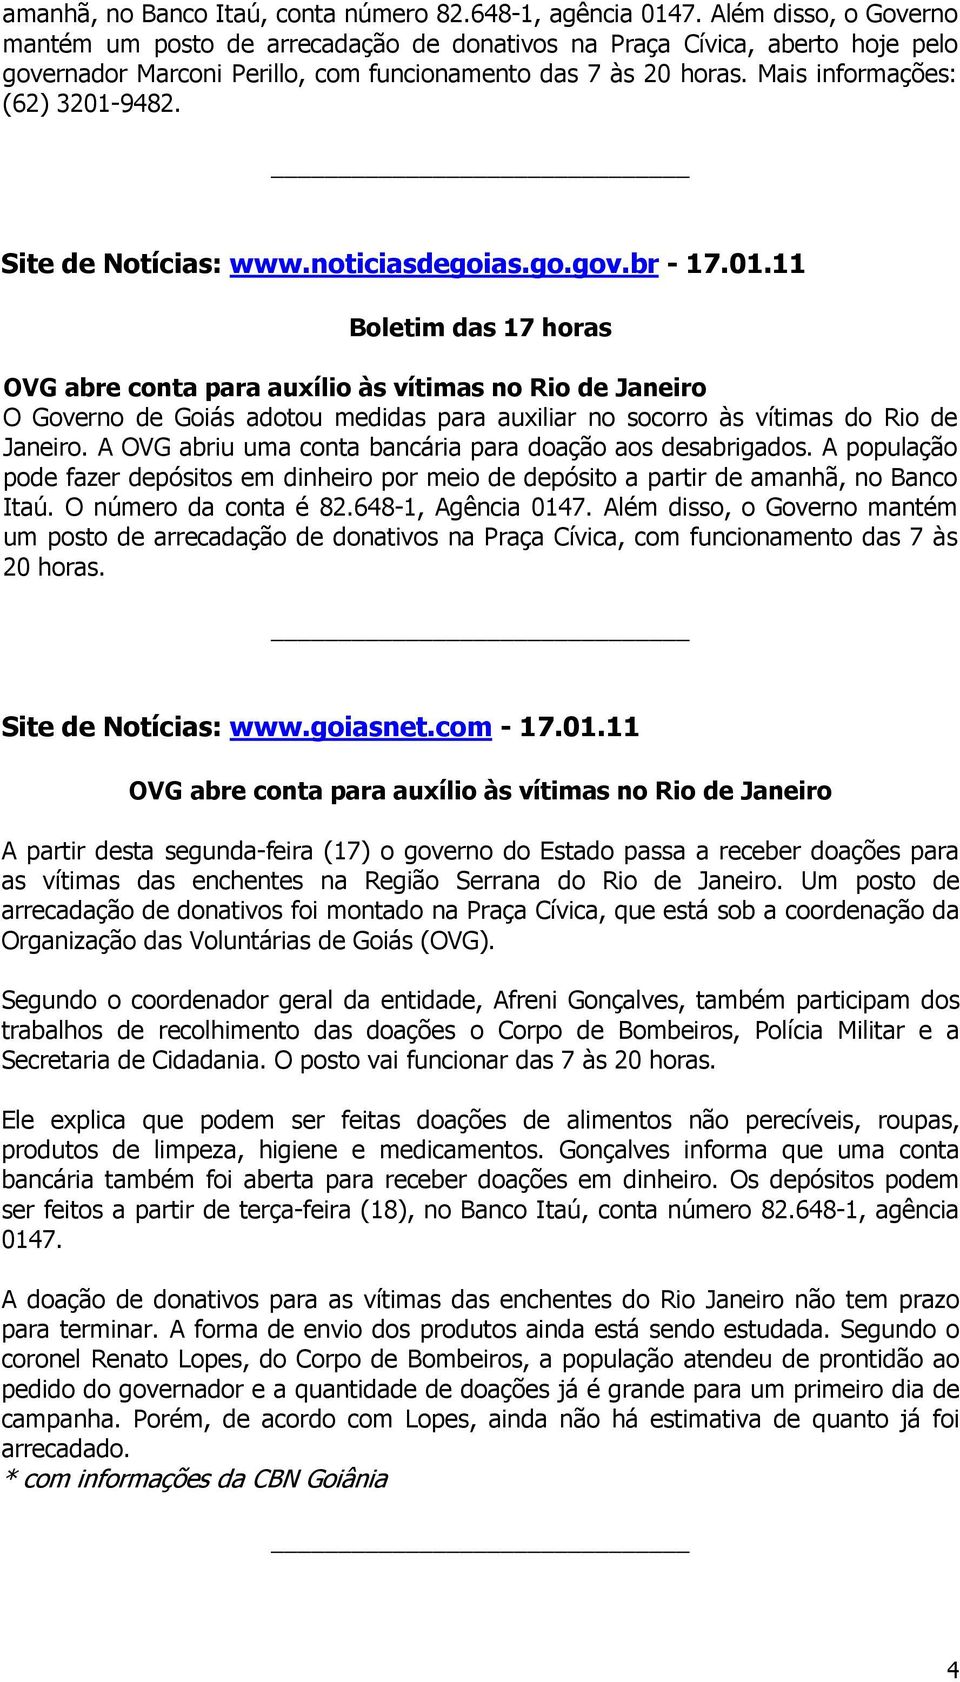 Boletim das 17 horas O Governo de Goiás adotou medidas para auxiliar no socorro às vítimas do Rio de Janeiro. A OVG abriu uma conta bancária para doação aos desabrigados.